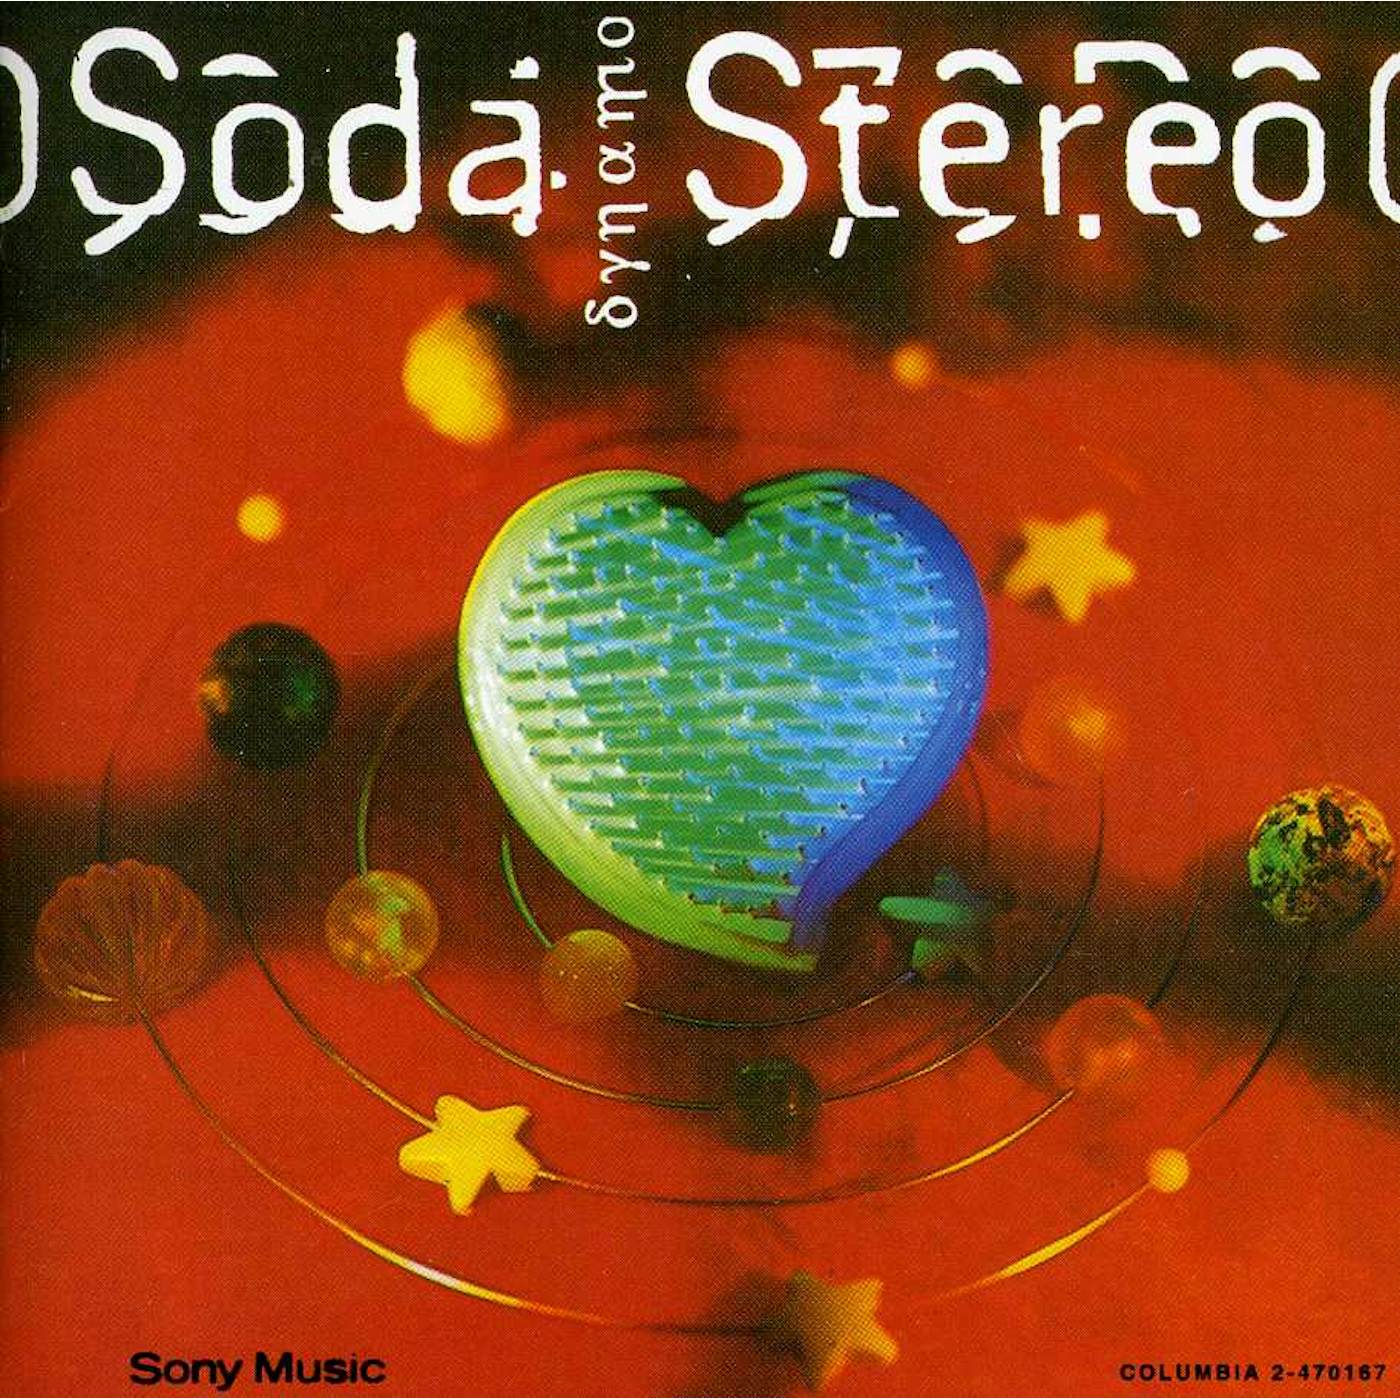 Soda Stereo DYNAMO CD